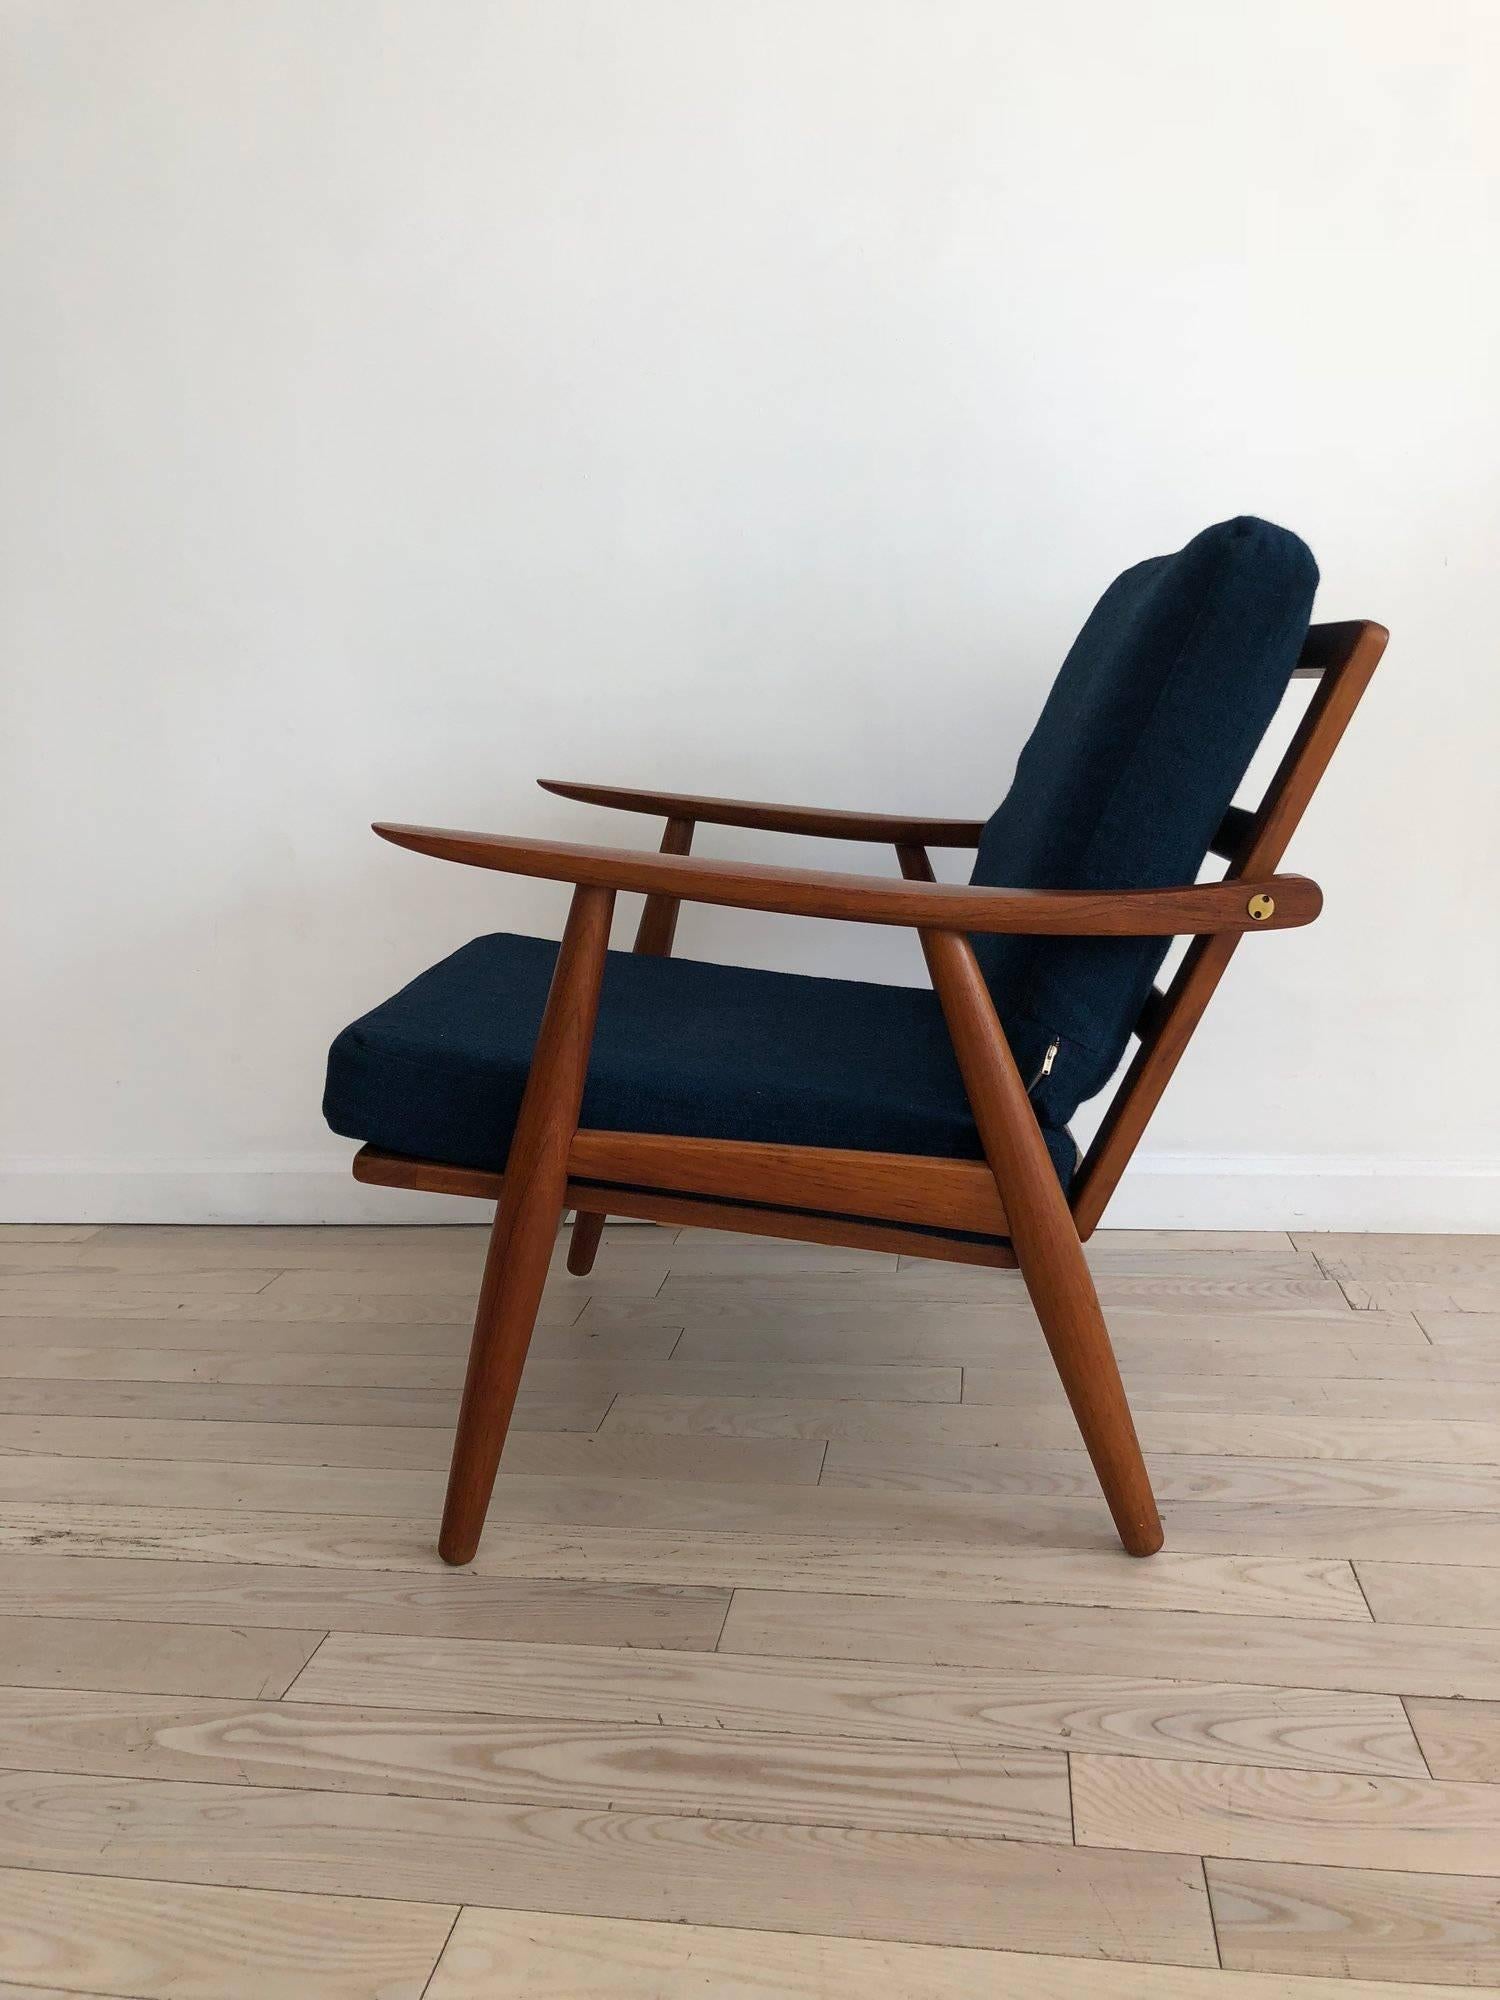 Danish Early Hans J Wegner GE-270 Easy Chair in Teak, Made in Denmark